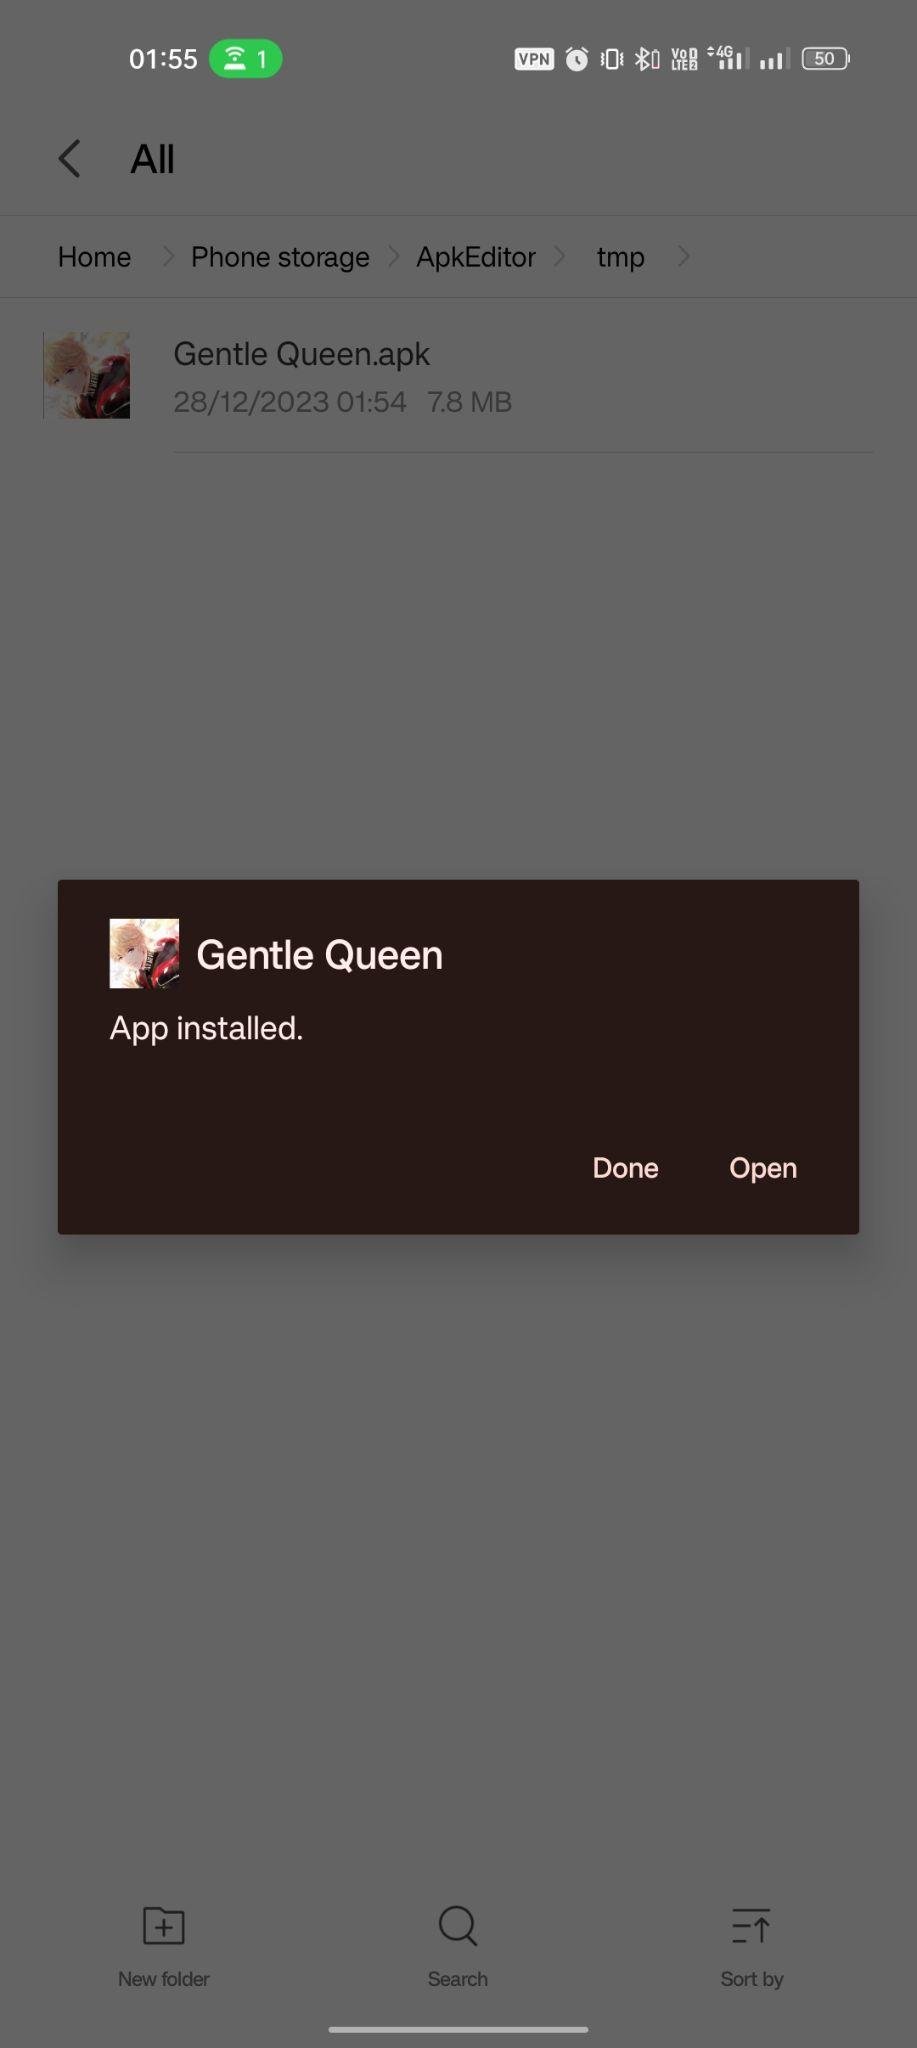 Gentle Queen apk installed